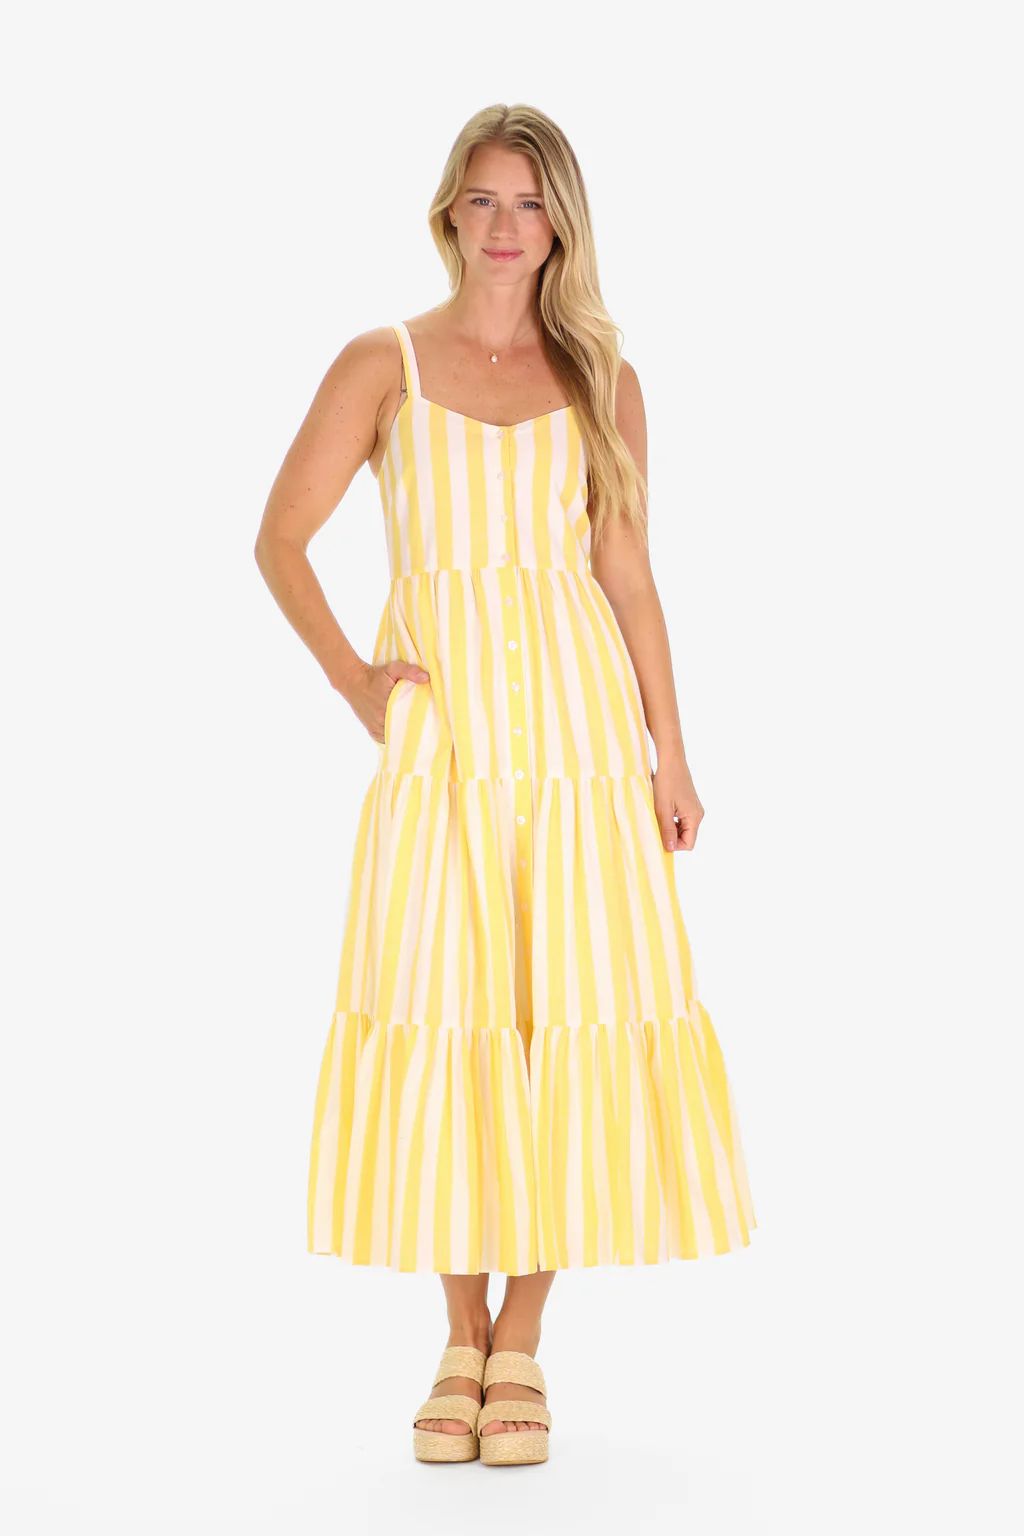 The Duxbury Dress in Lemon Linen Stripe | Duffield Lane